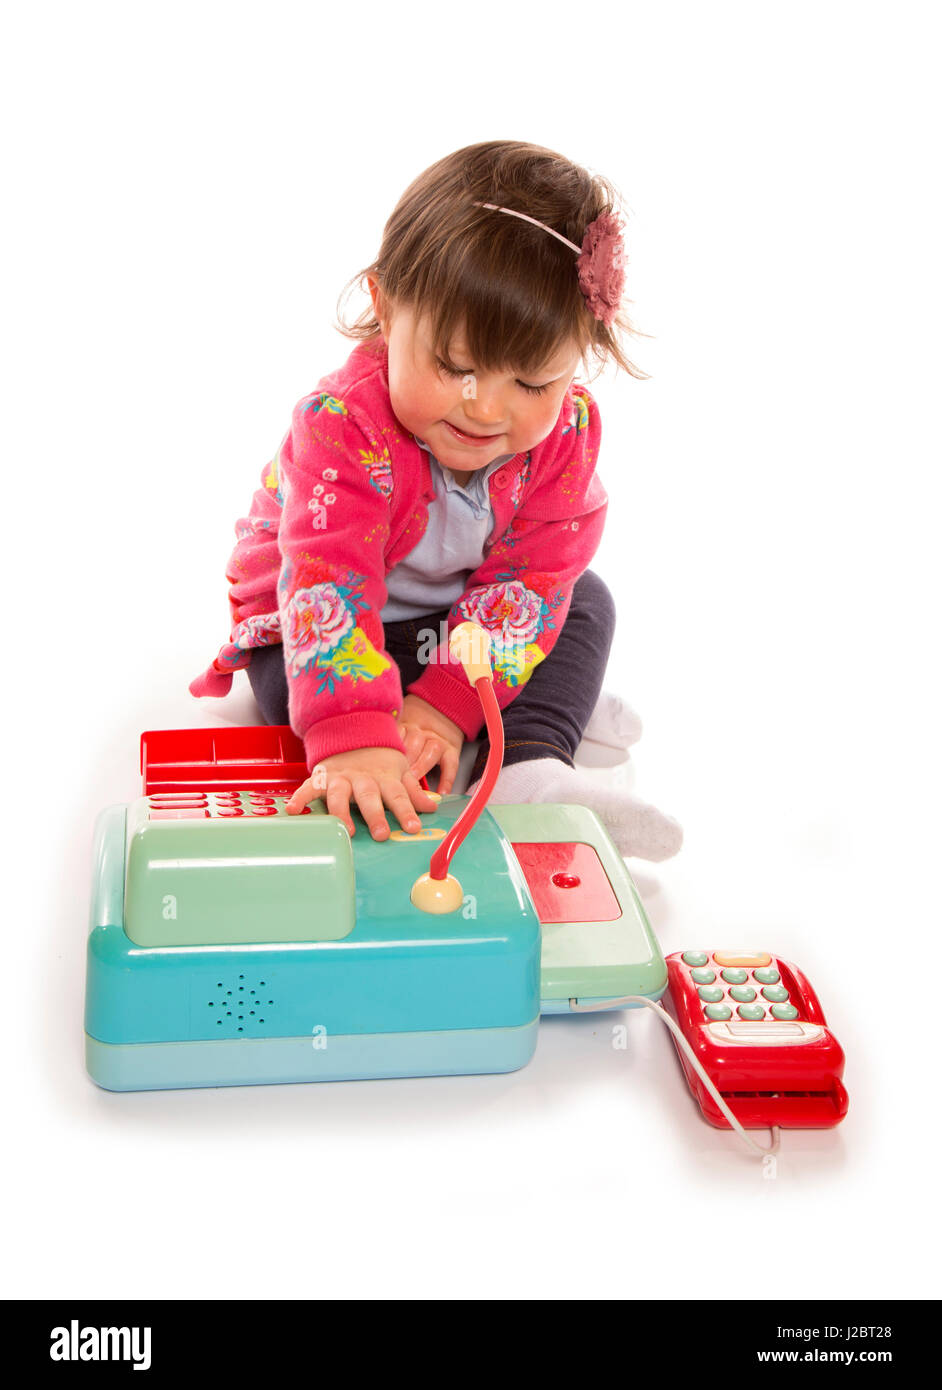 Kleinkind spielt mit einer Kasse in einem studio Stockfoto